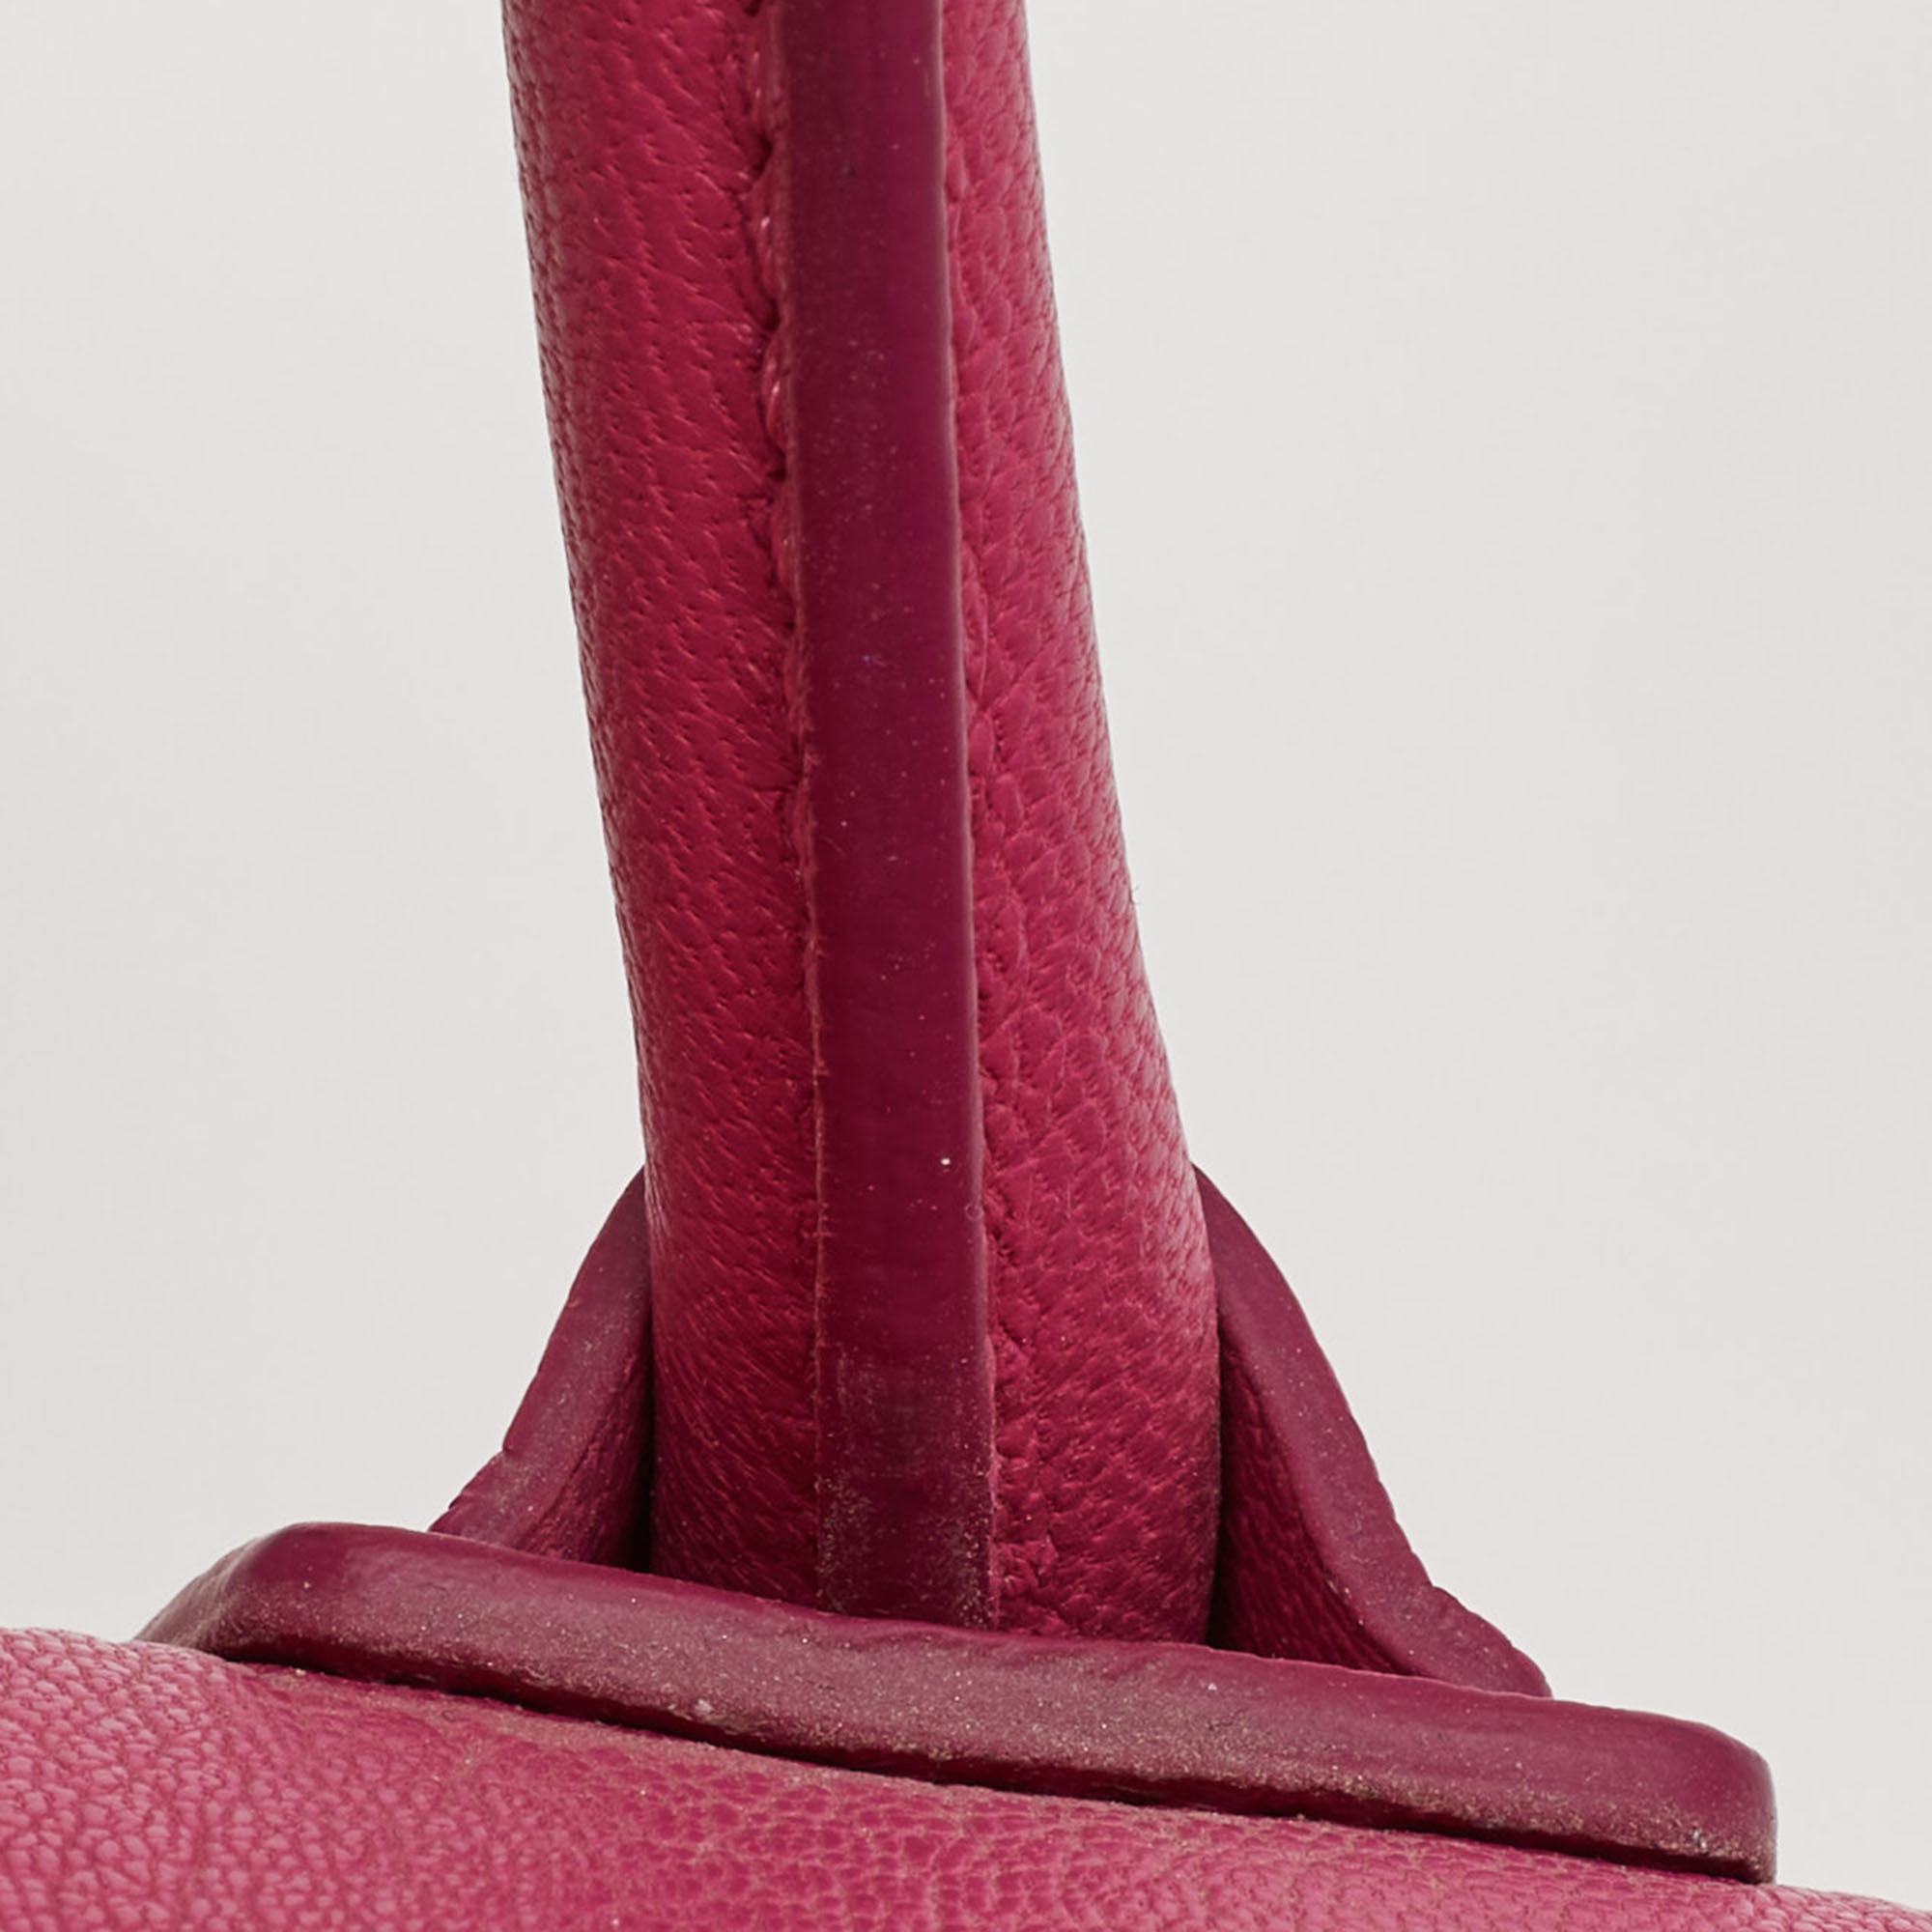 Givenchy Magenta Leather Small Antigona Satchel